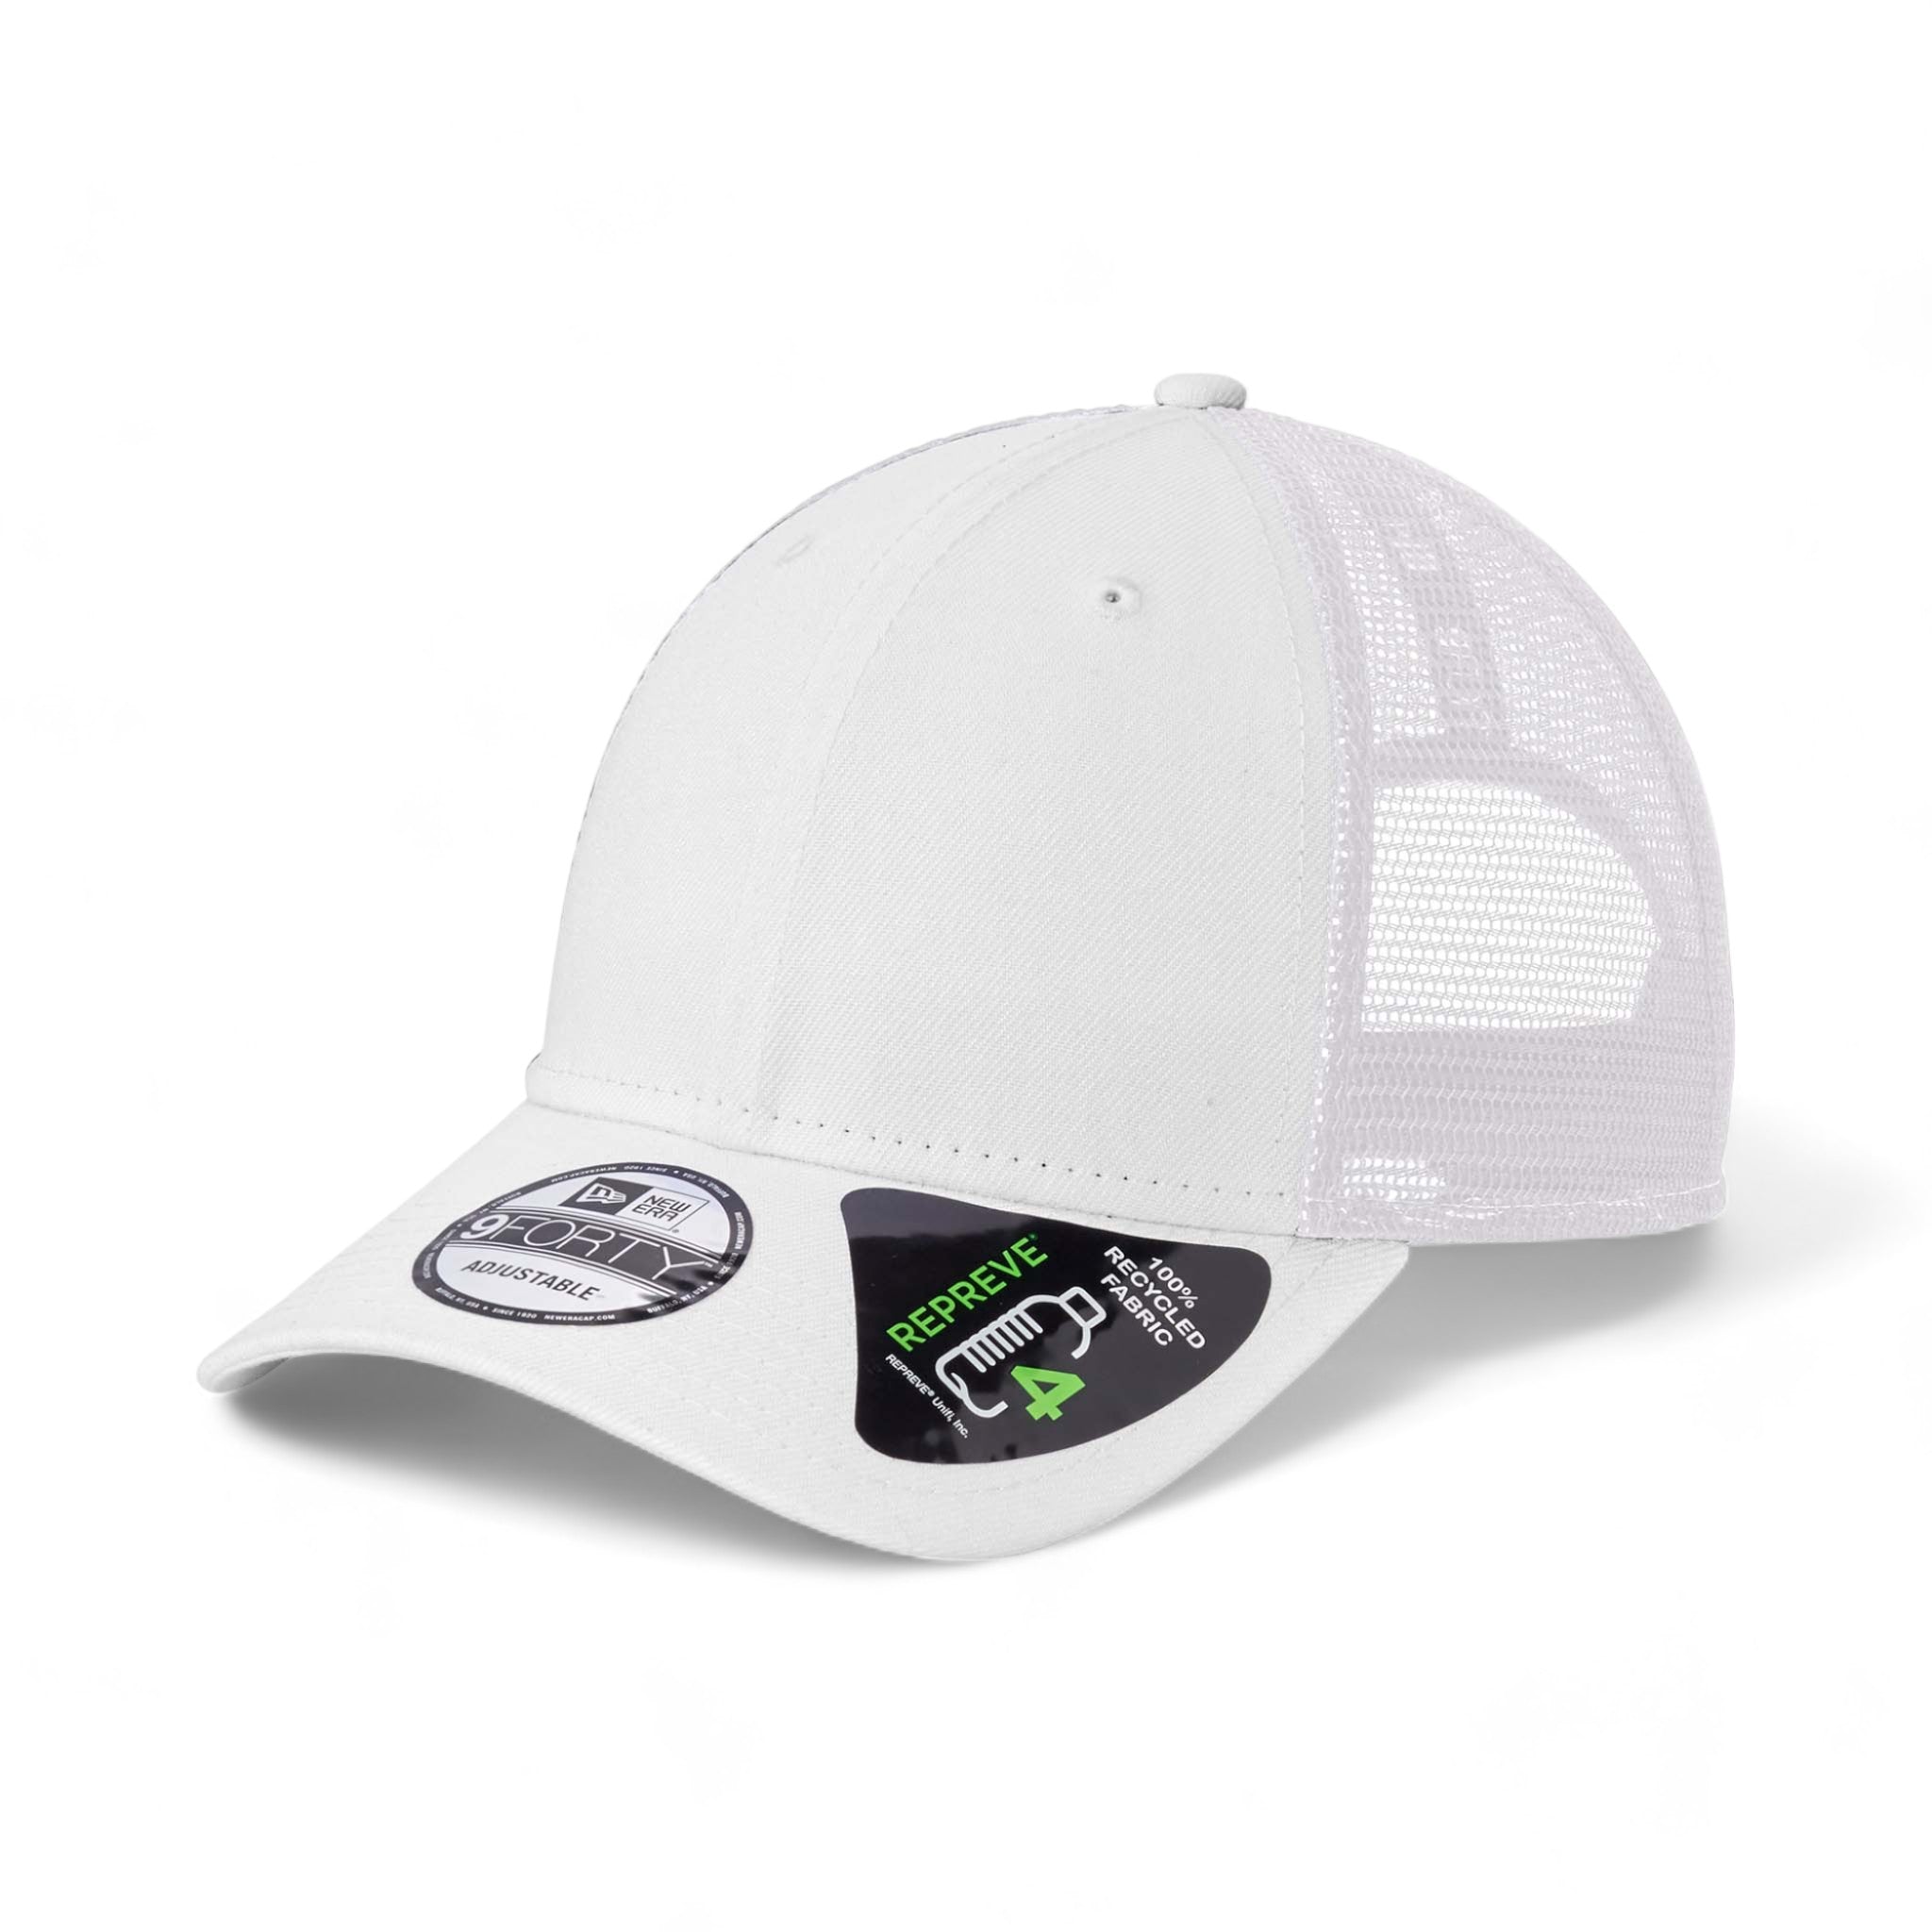 Side view of New Era NE208 custom hat in white